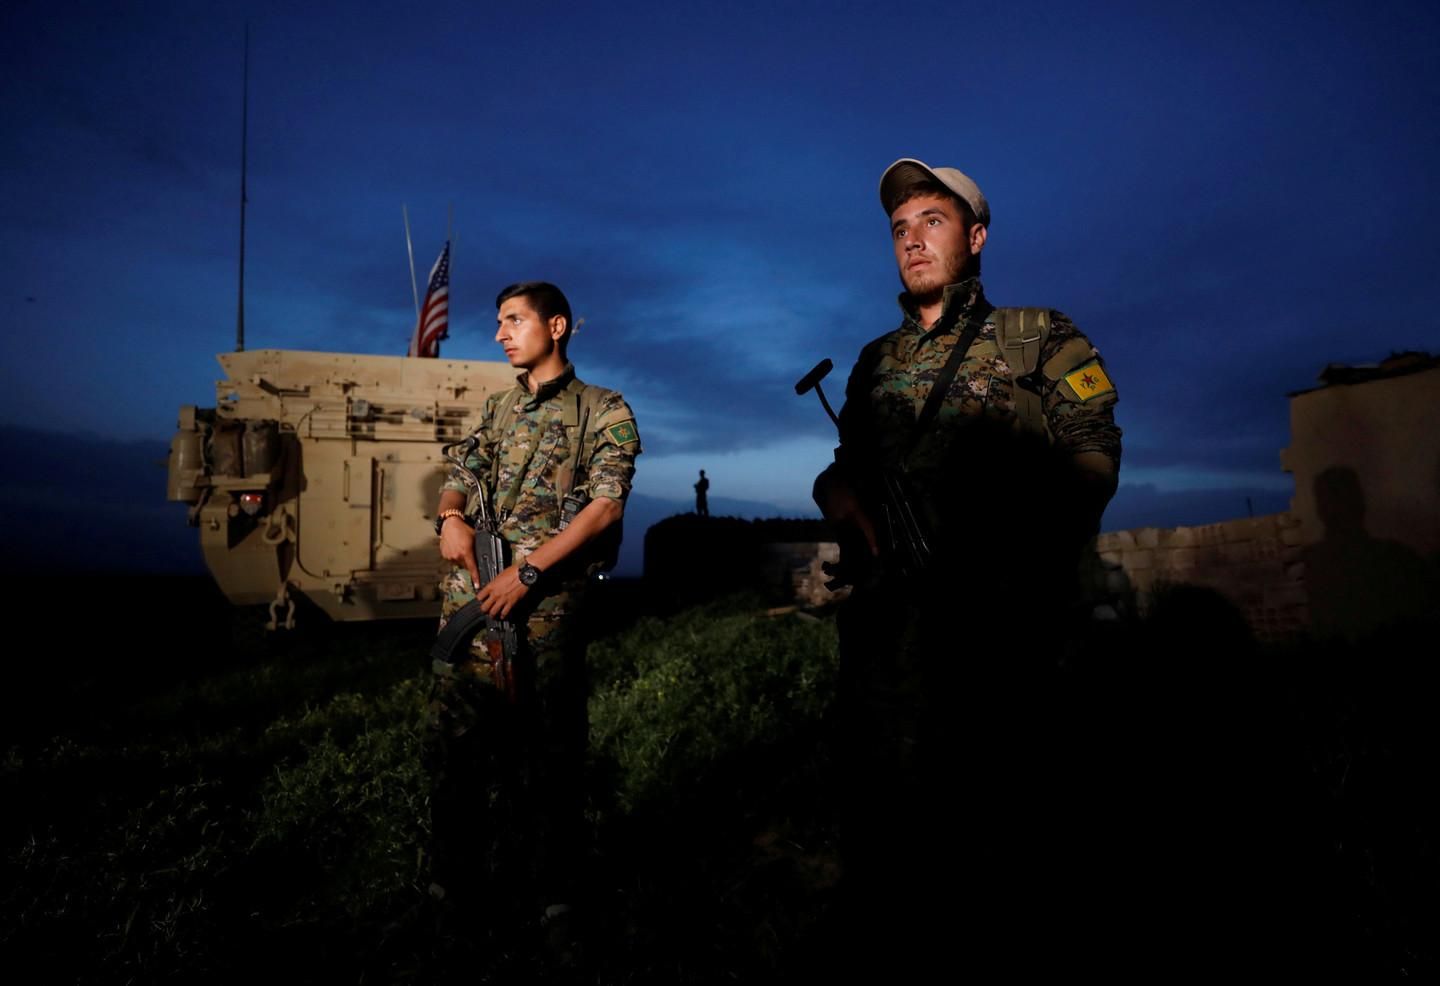 Курдские боевики рядом с американской военной машиной. Фото: © REUTERS/Rodi Said